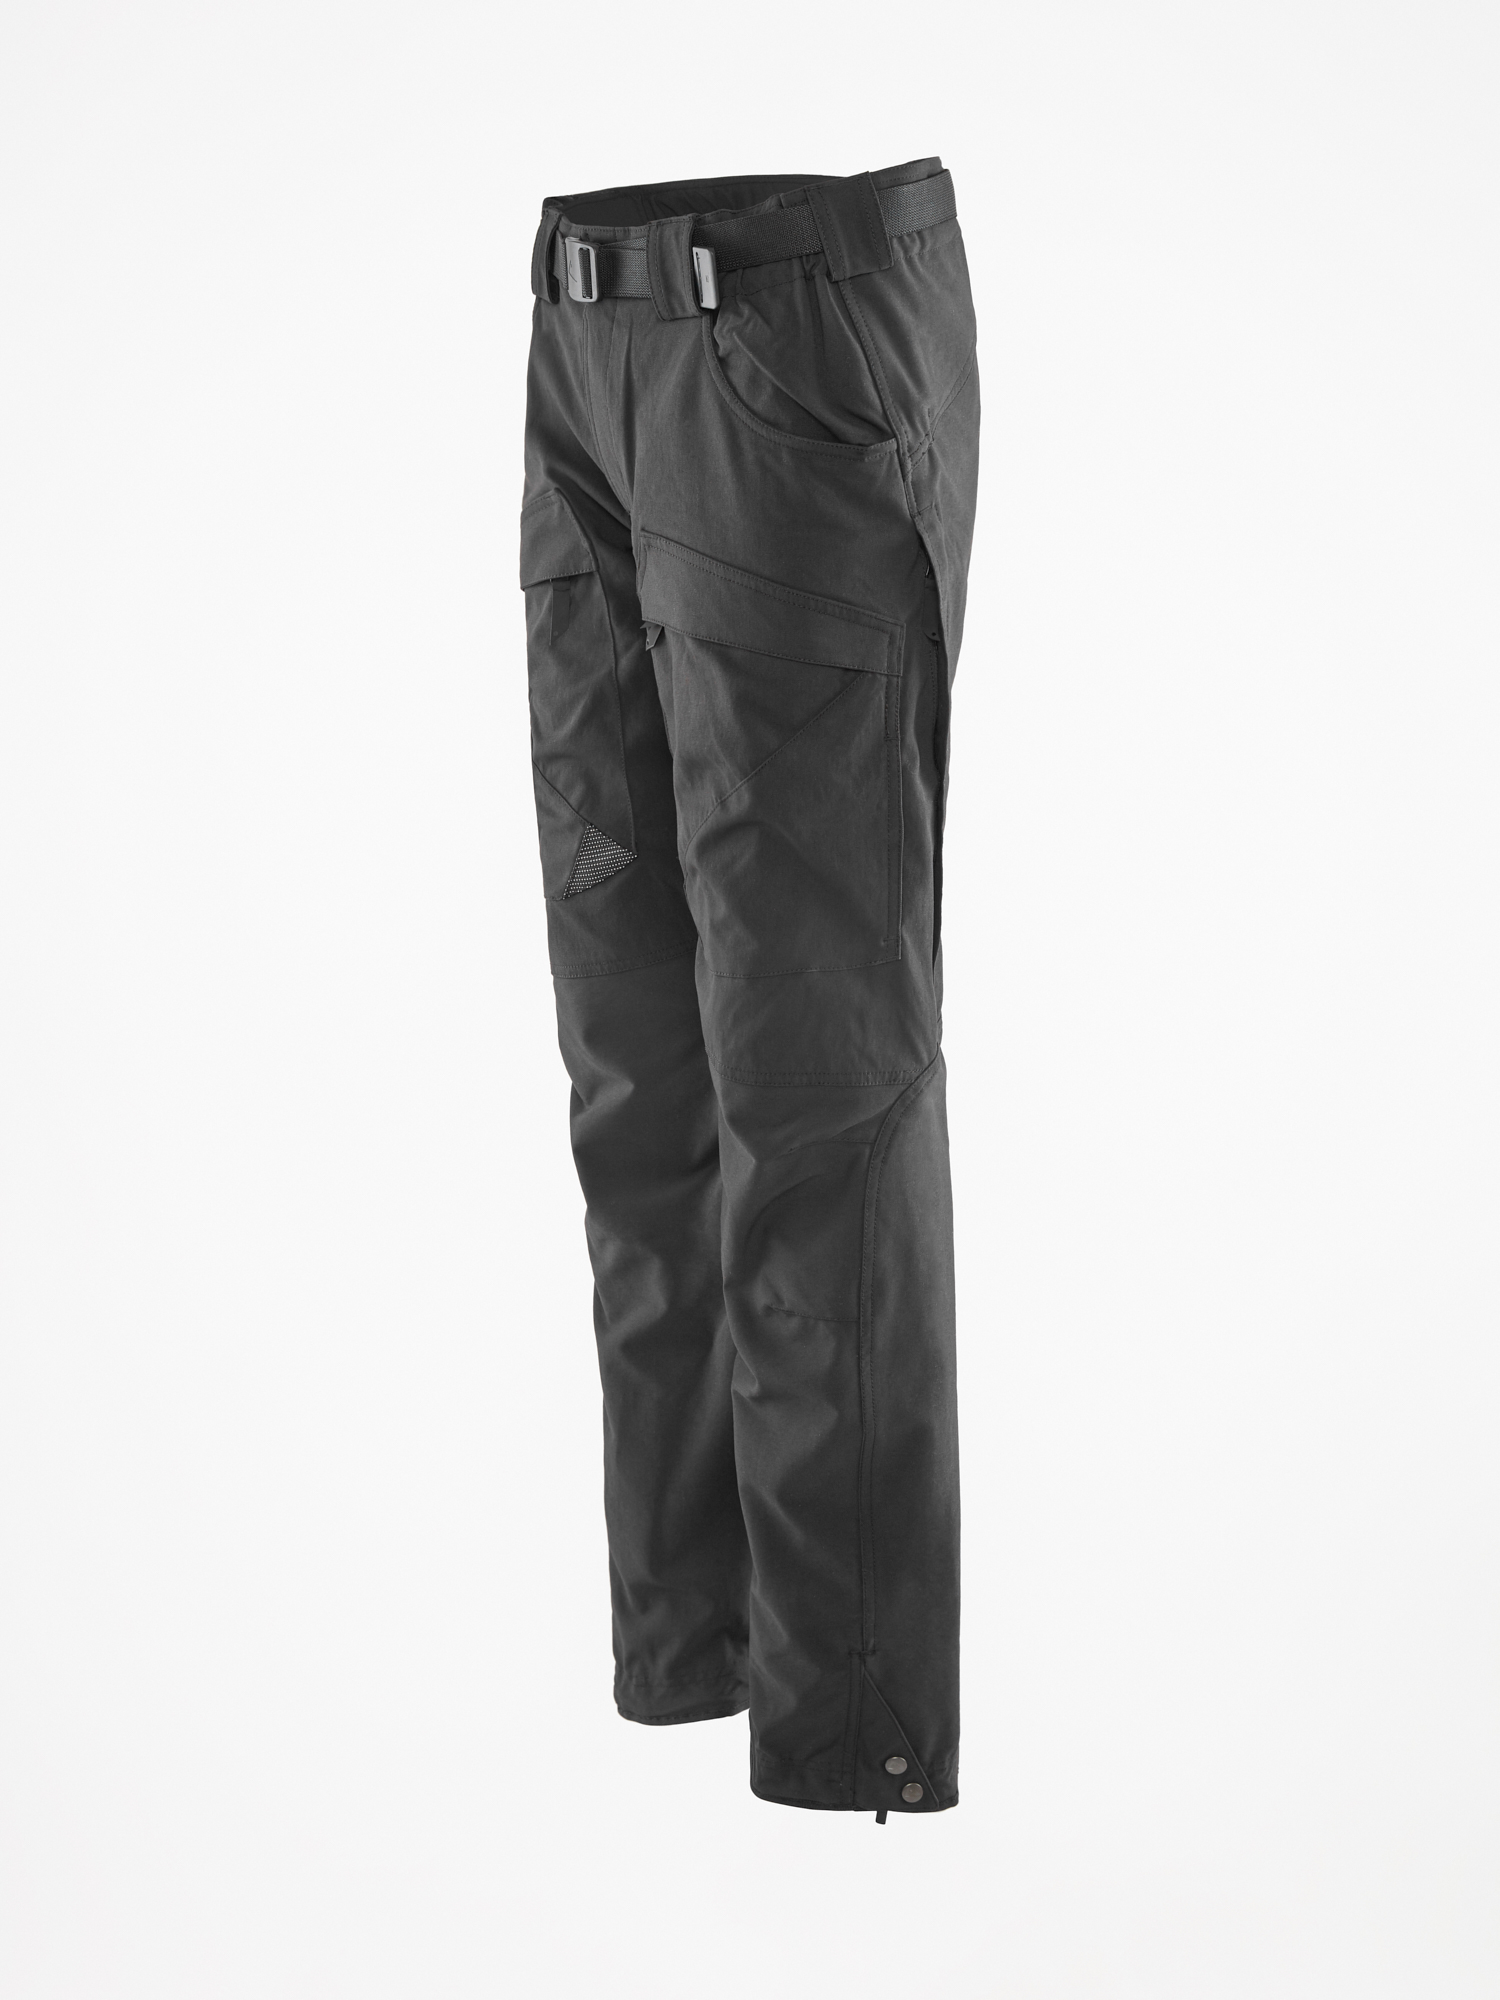 15421M81 - Gere 2.0 Pants Short M's - Black